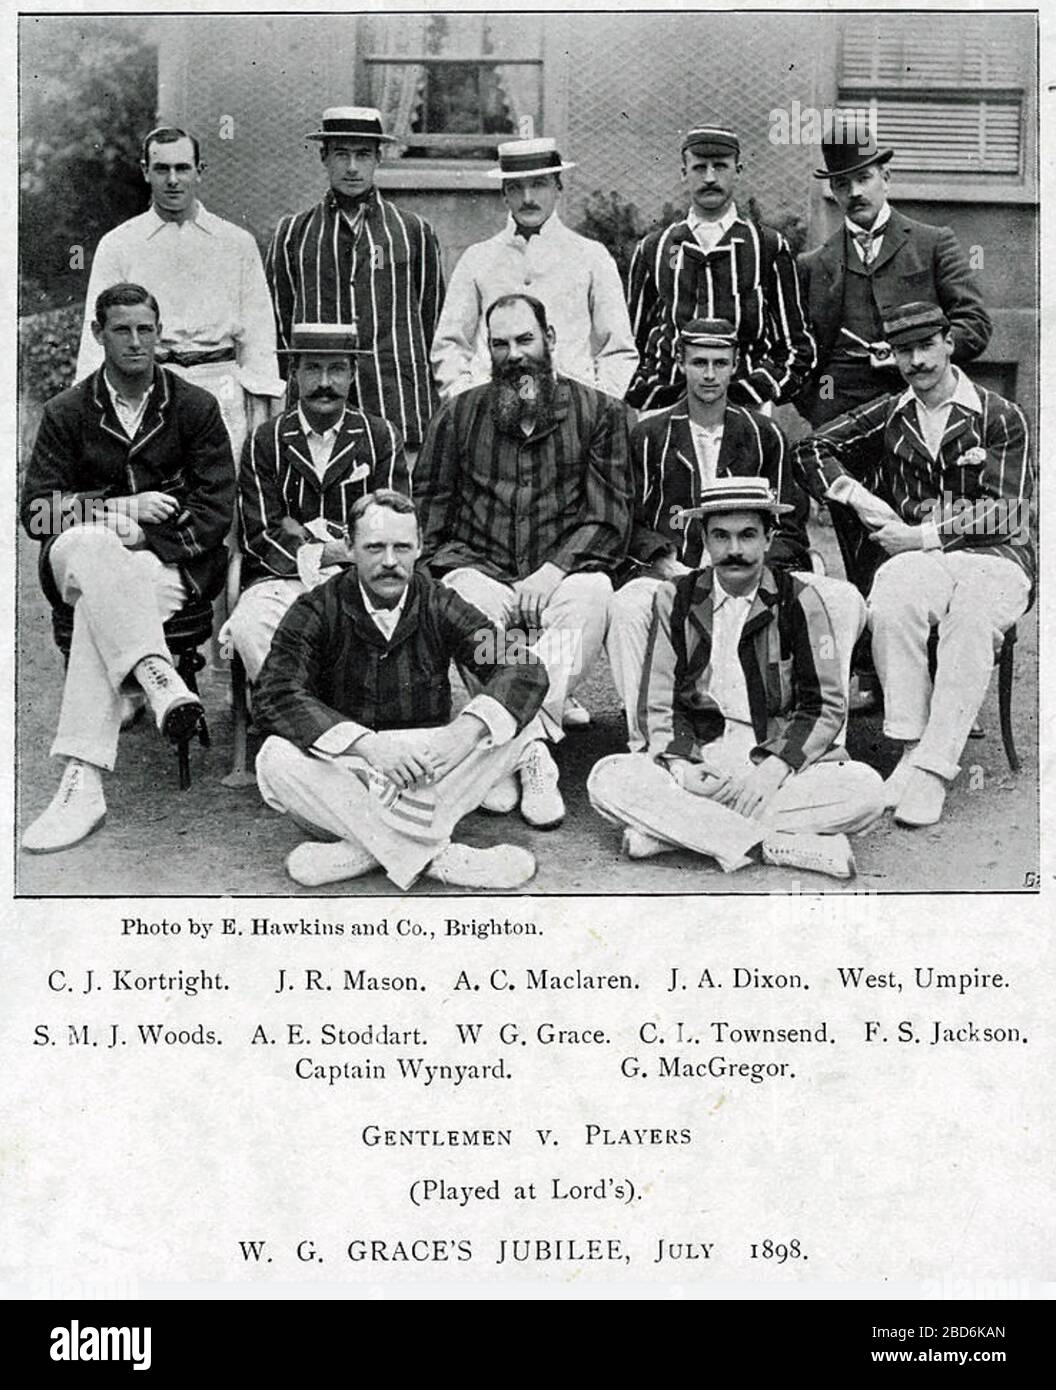 W. G. Grace (1848-1915) cricketeur amateur anglais avec son équipe lors du match de 1898 Messieurs / joueurs, tenu à son 50ème anniversaire. Banque D'Images